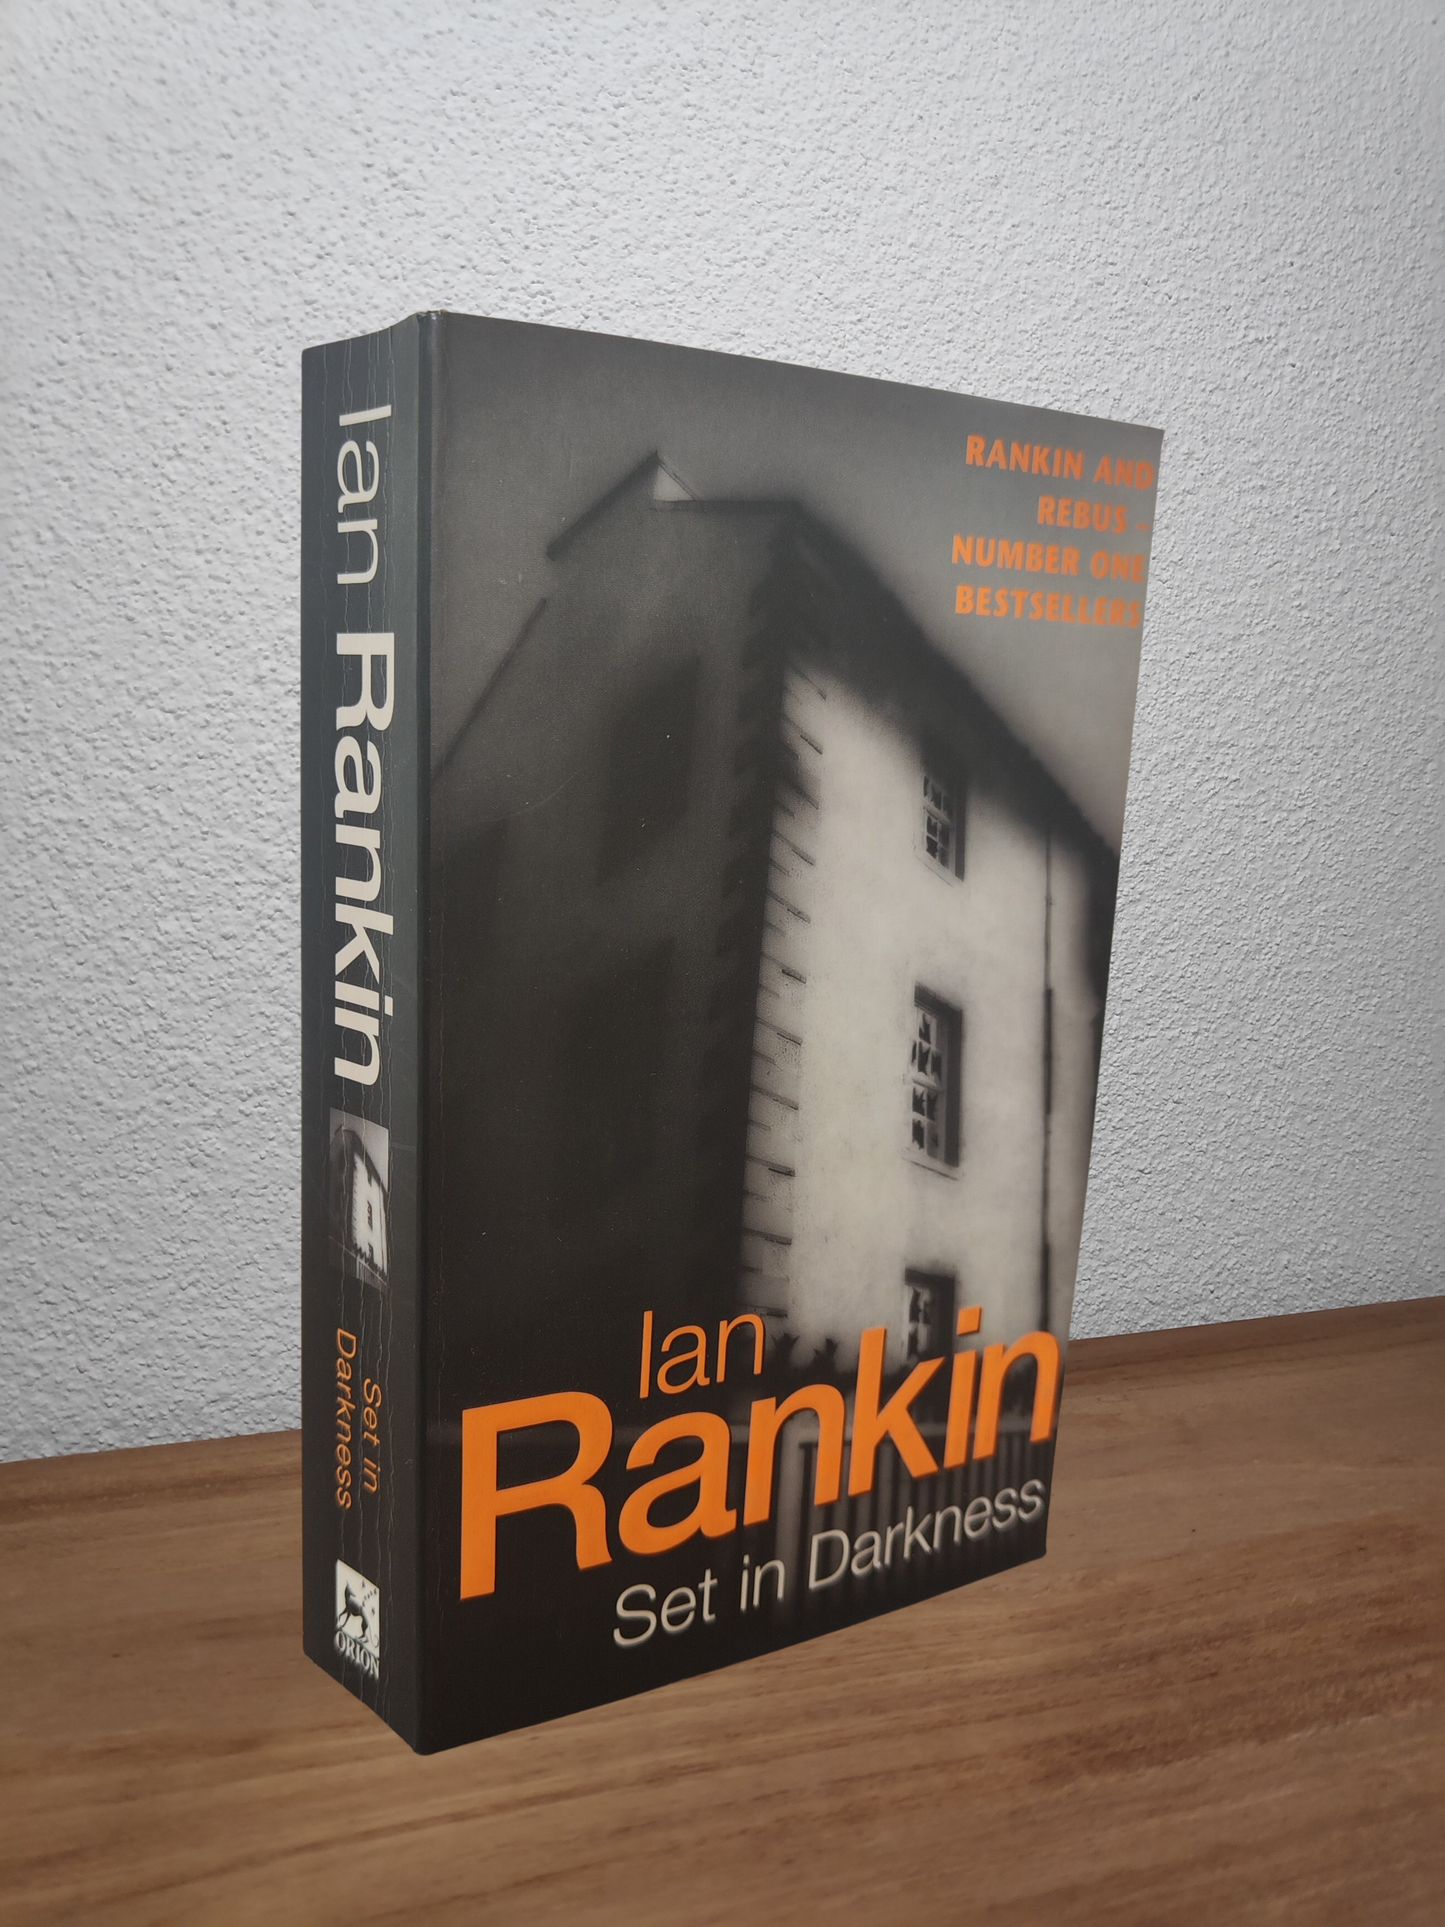 Ian Rankin - Set in Darkness (Inspector Rebus #11)